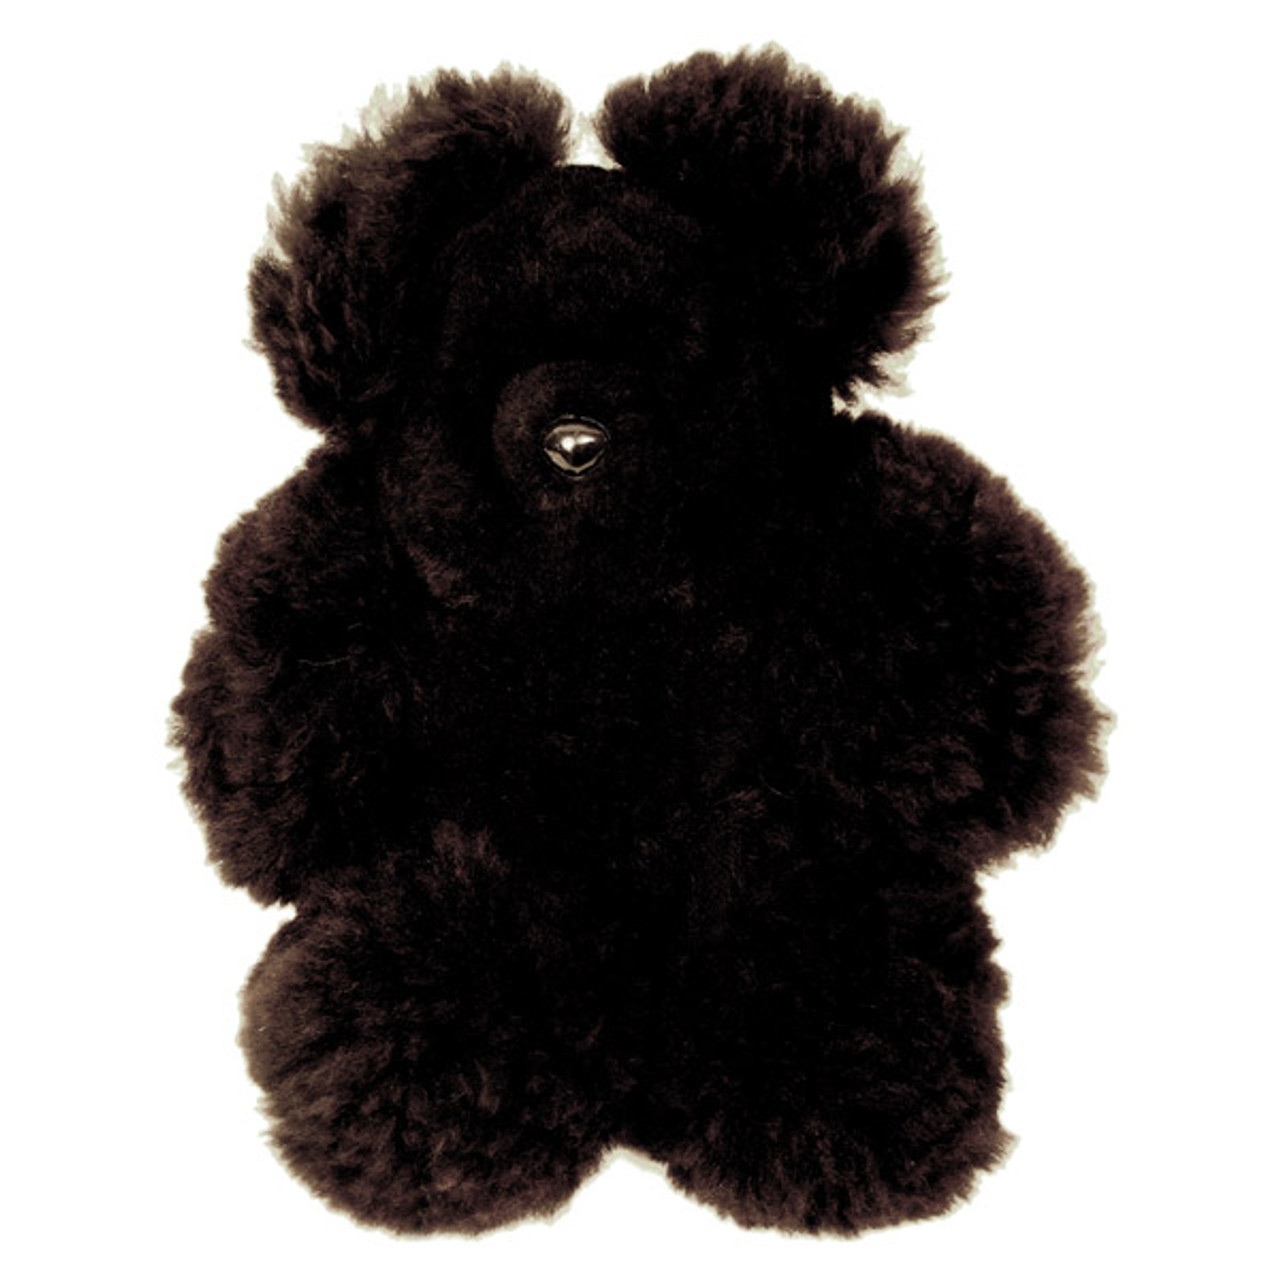 soft plush teddy bear